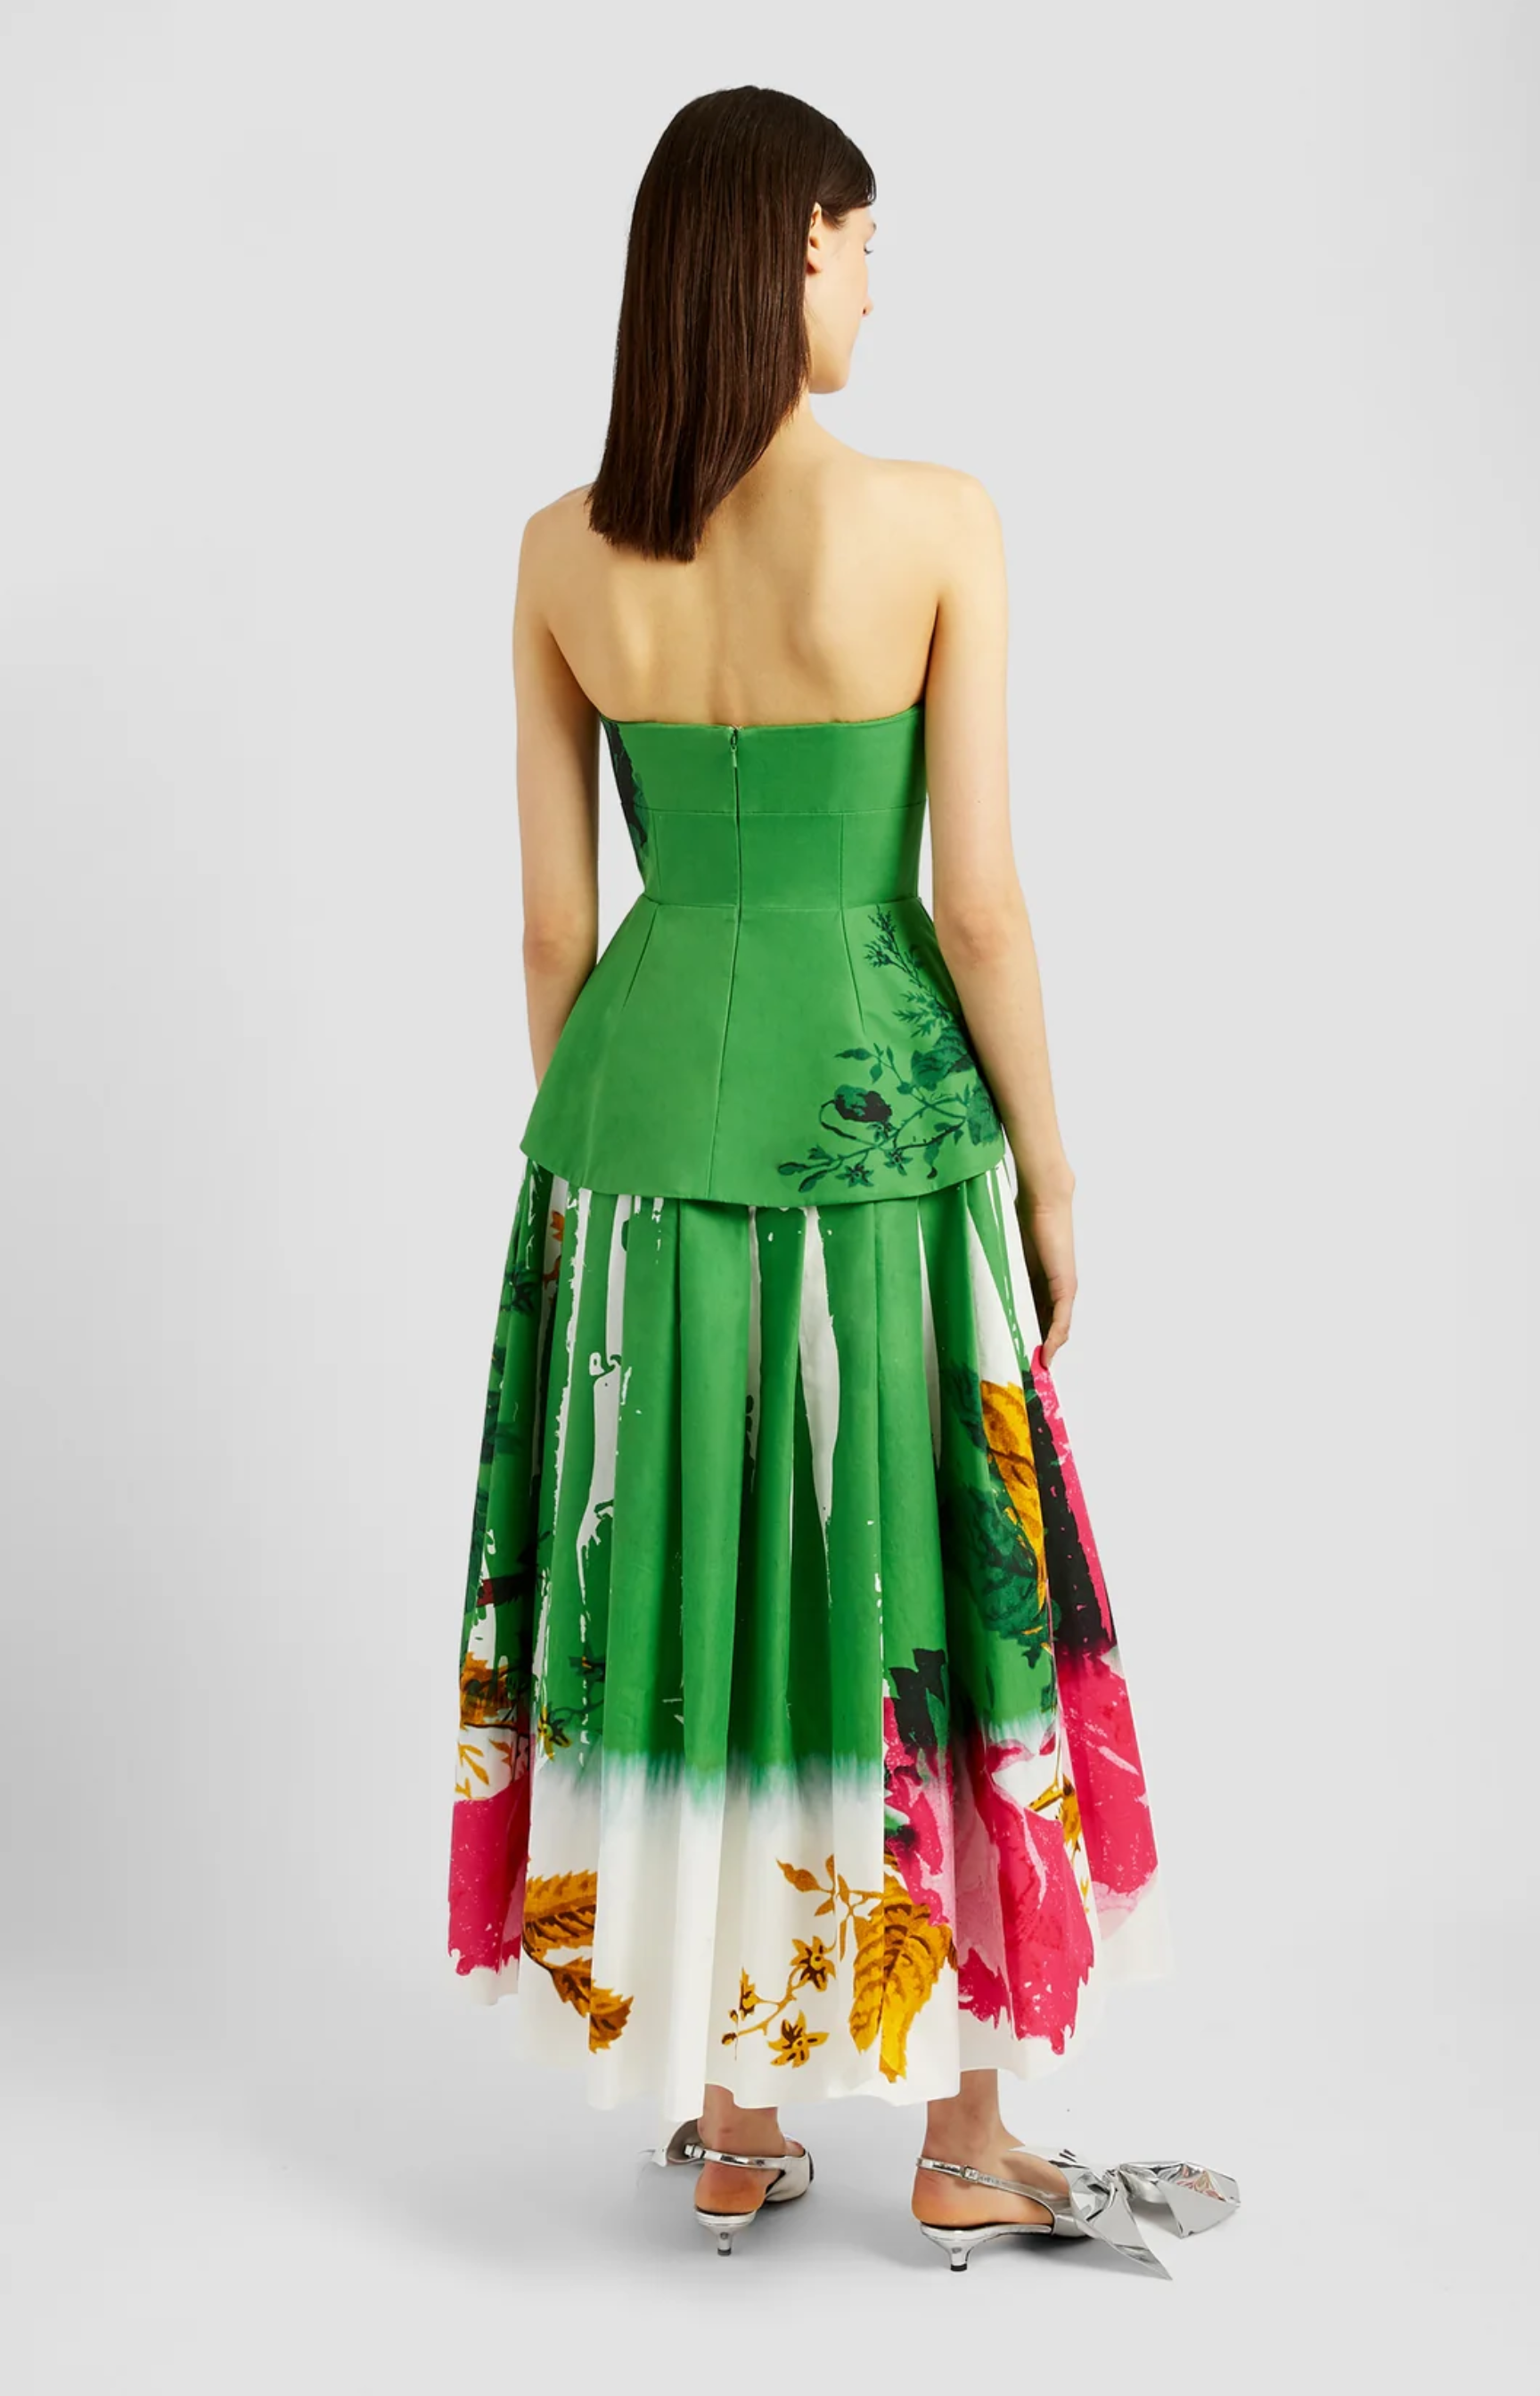 Full Skirt Cocktail Dress